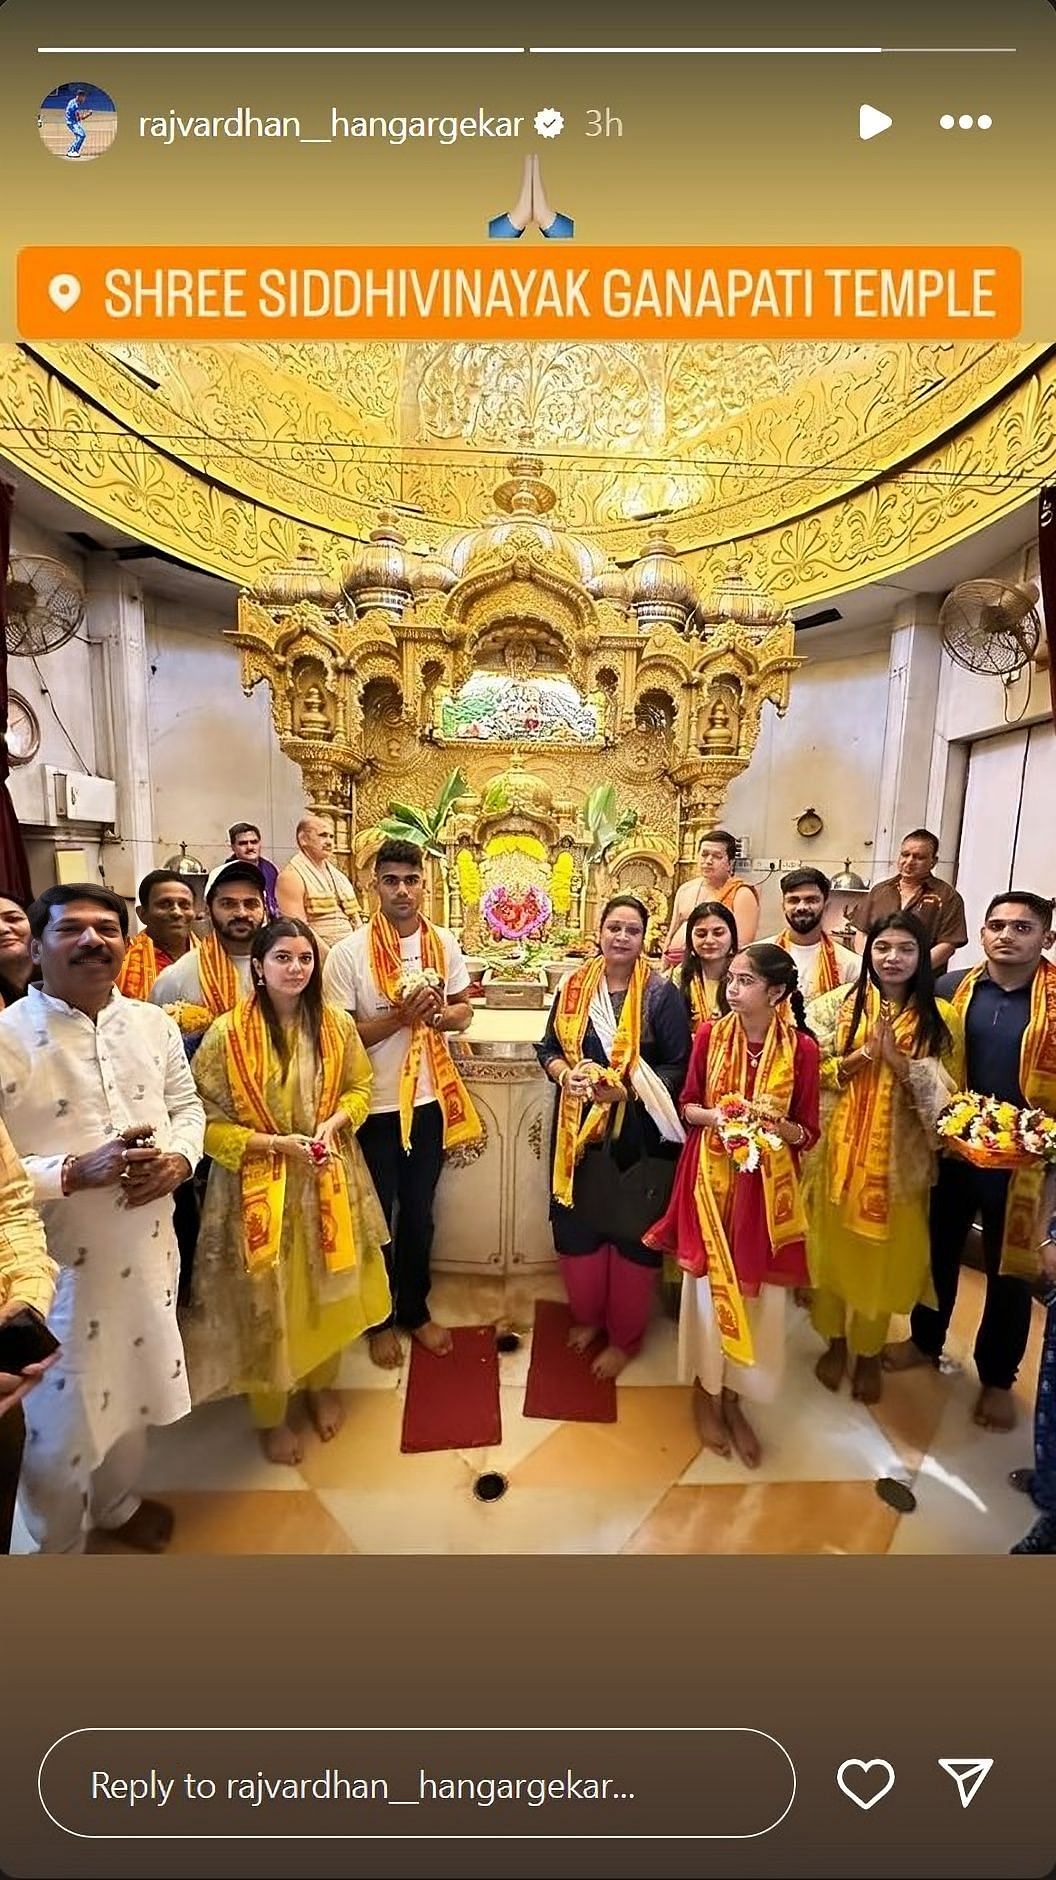 CSK players seek blessings at Siddhivinayak Temple in Mumbai.